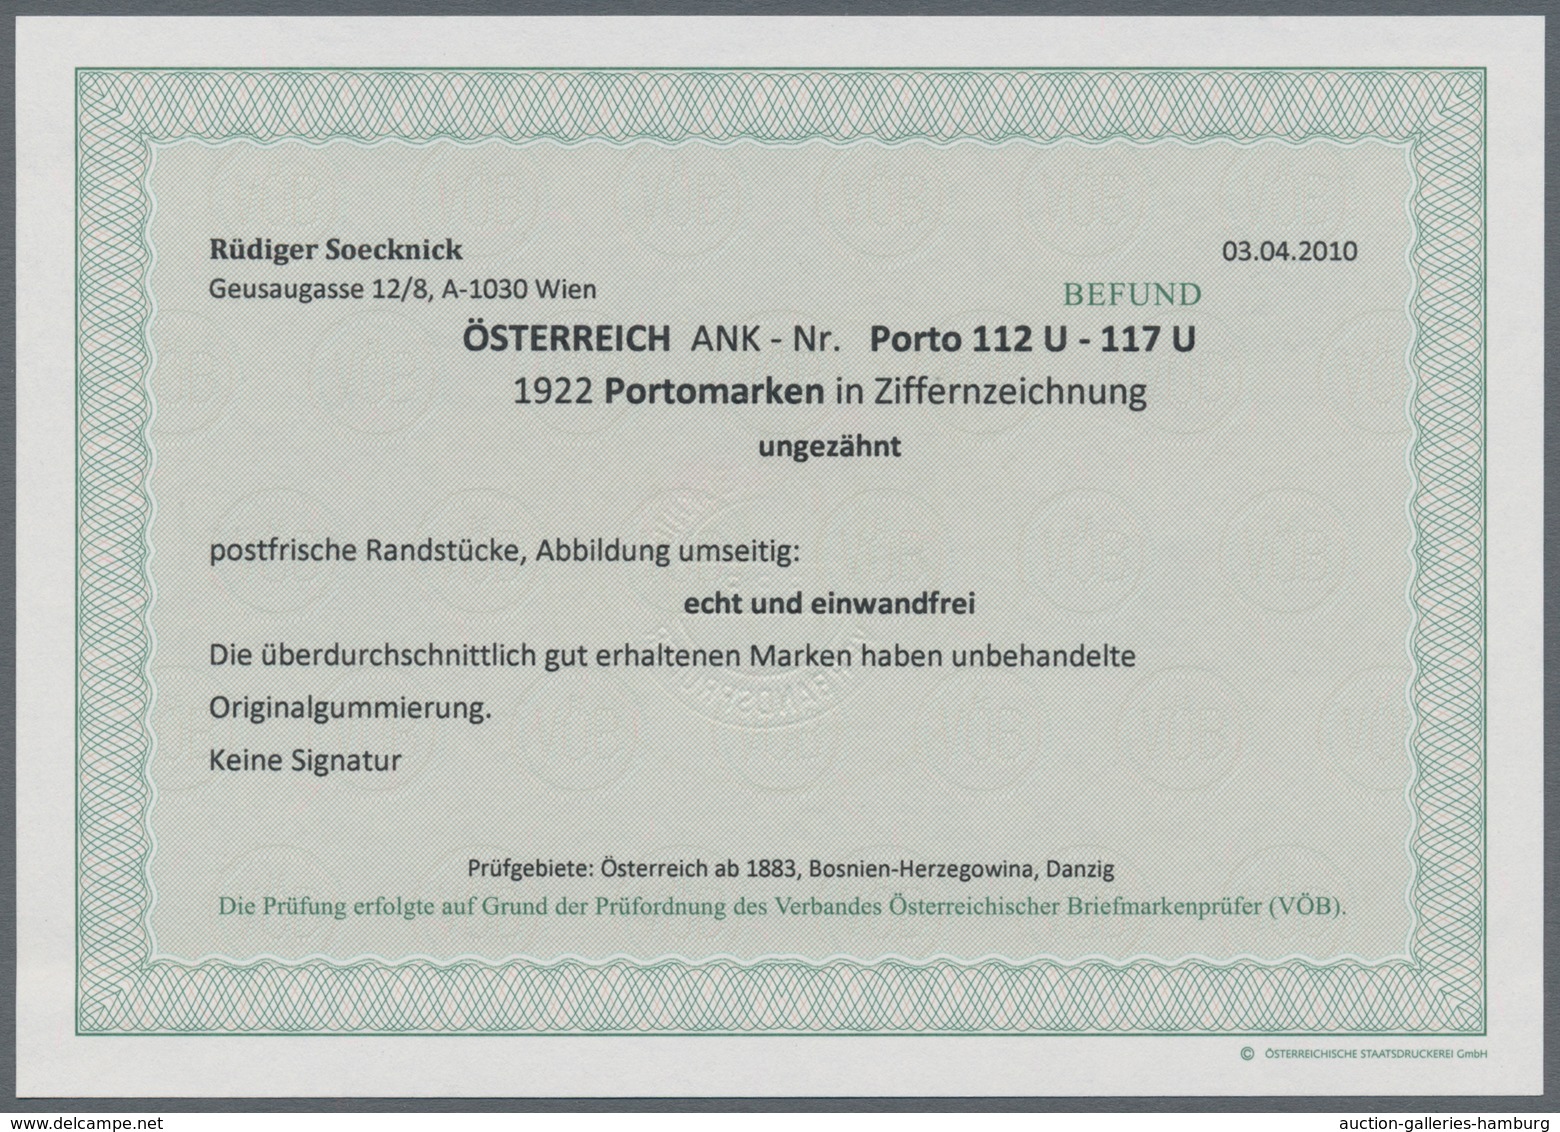 Österreich - Portomarken: 1922, Ziffern, 10 Kr. bis 50 Kr. kleines Format, sechs Werte ungezähnt vom